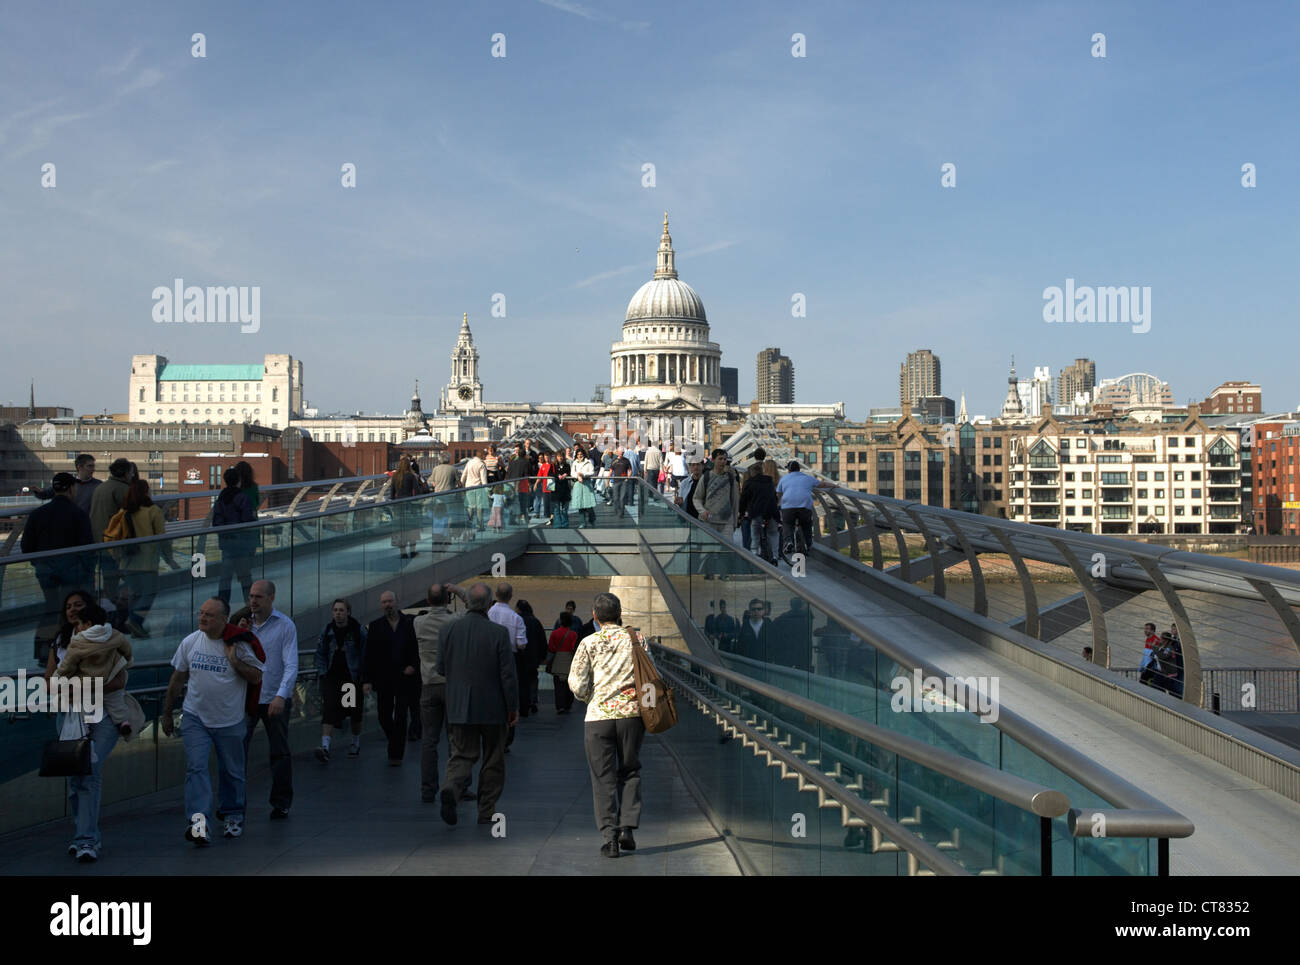 Londres - los peatones en el puente del milenio Foto de stock